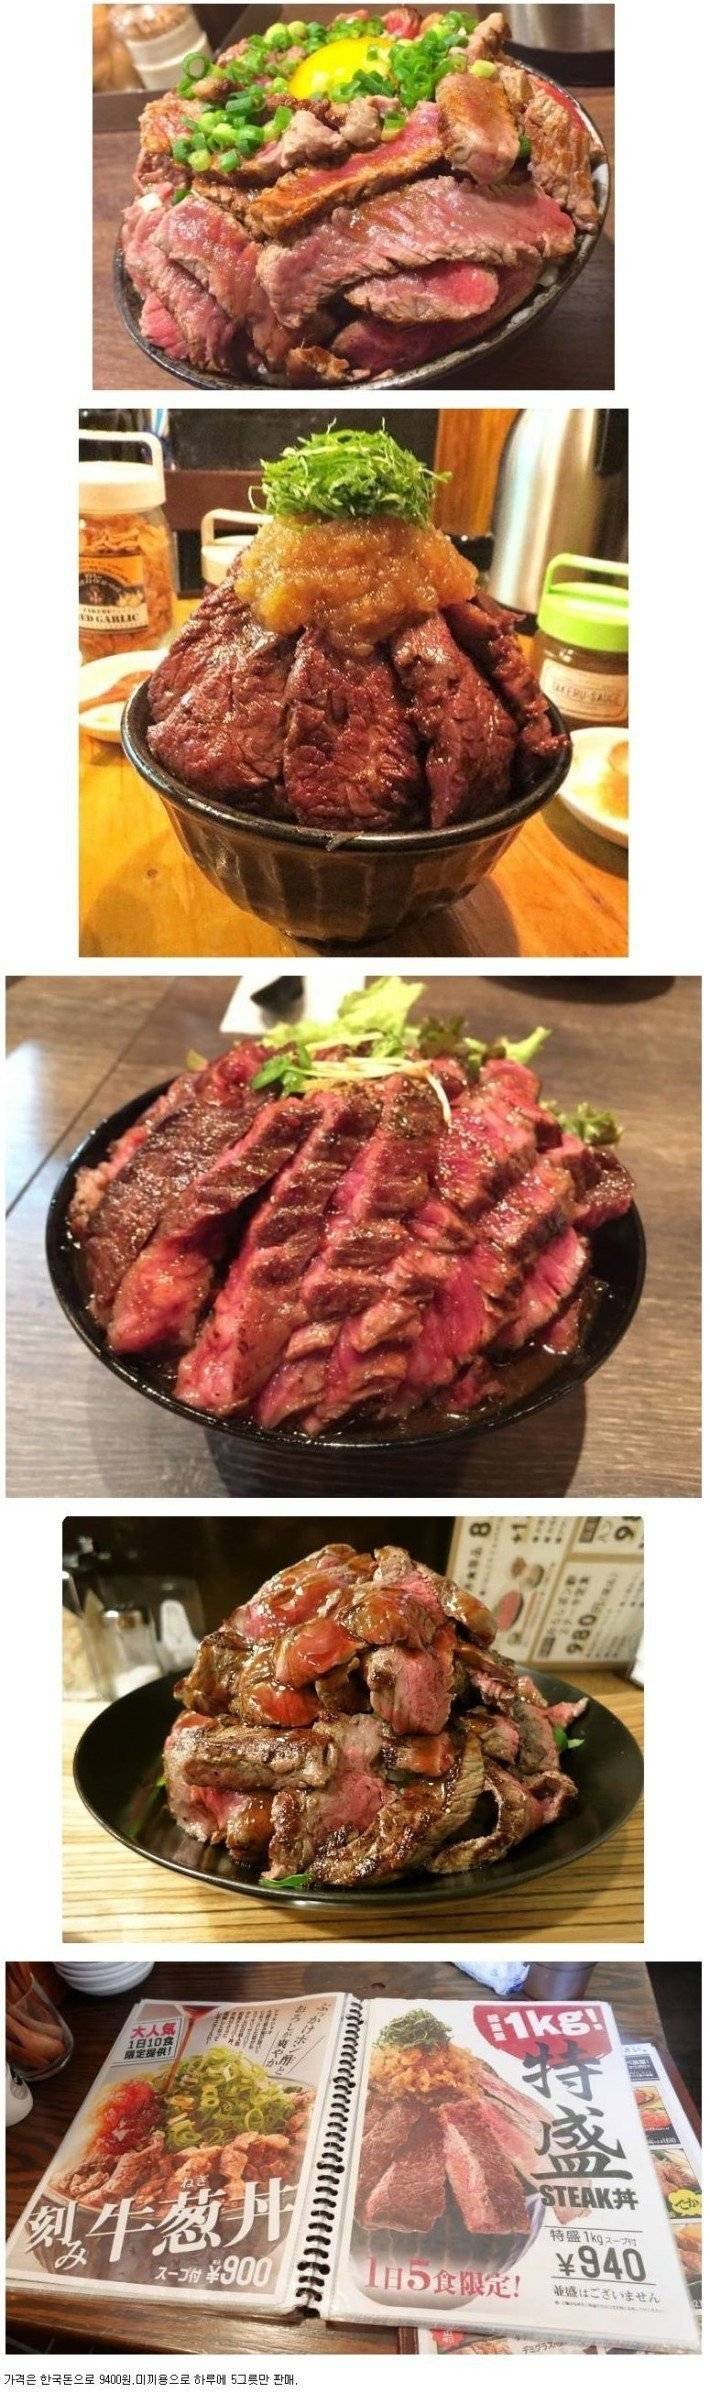 일본의 유명한 스테이크 덮밥